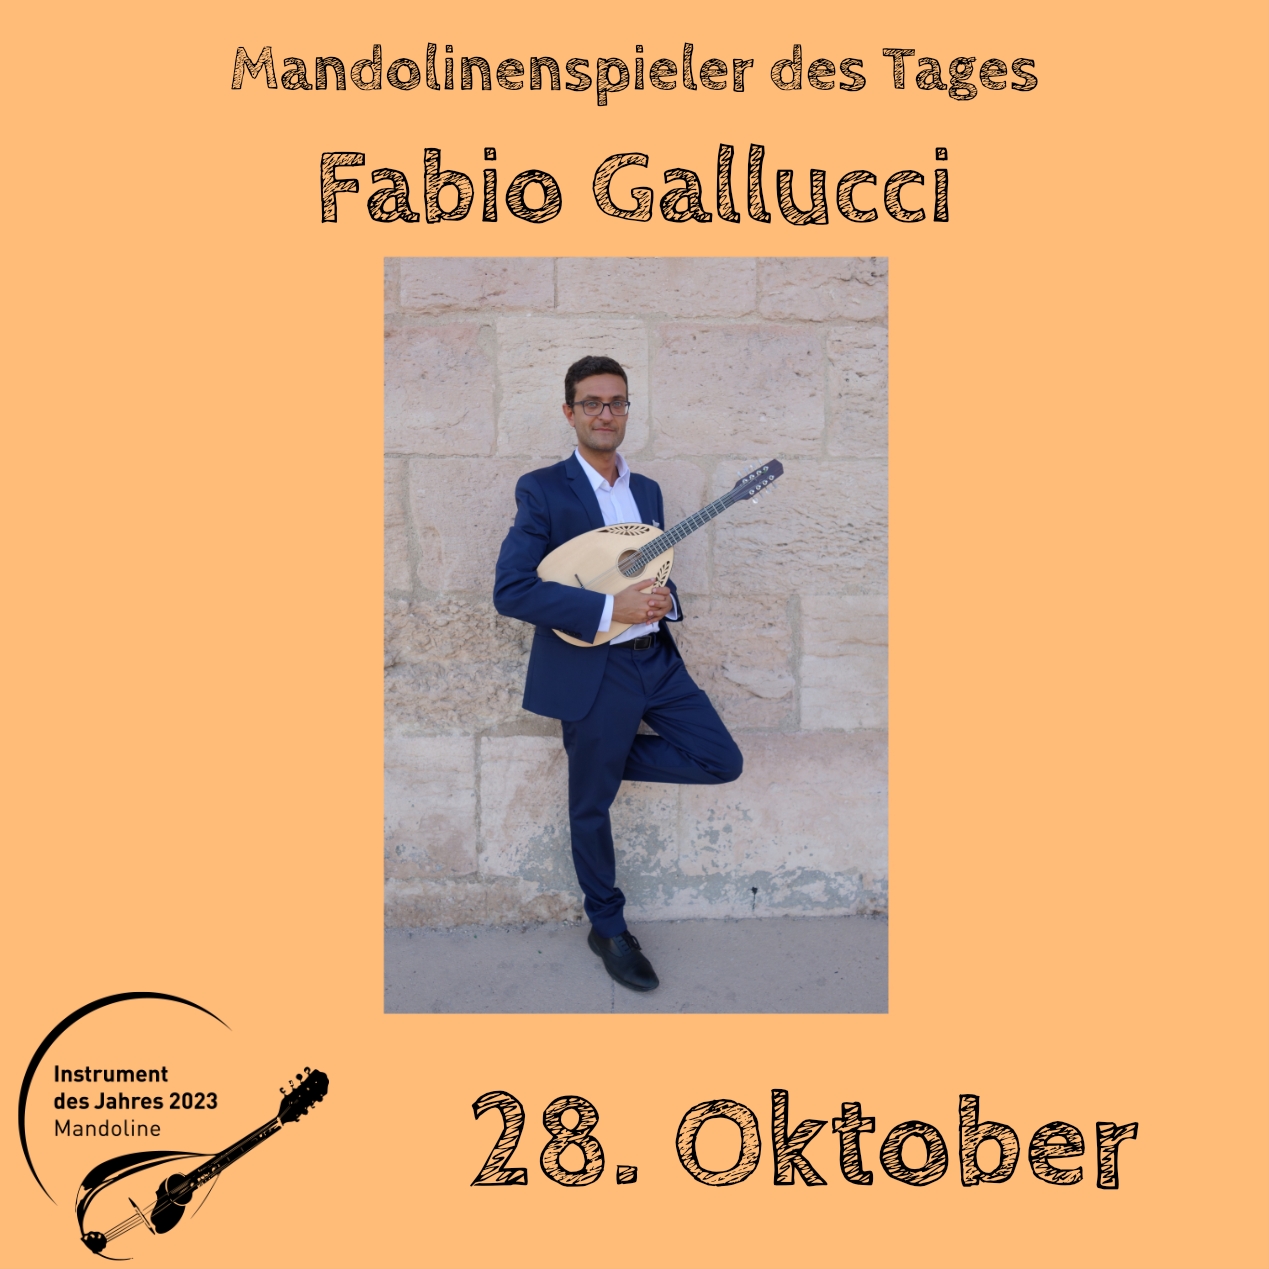 28. Oktober - Fabio Gallucci Instrument des Jahres 2023 Mandolinenspieler Mandolinenspielerin des Tages